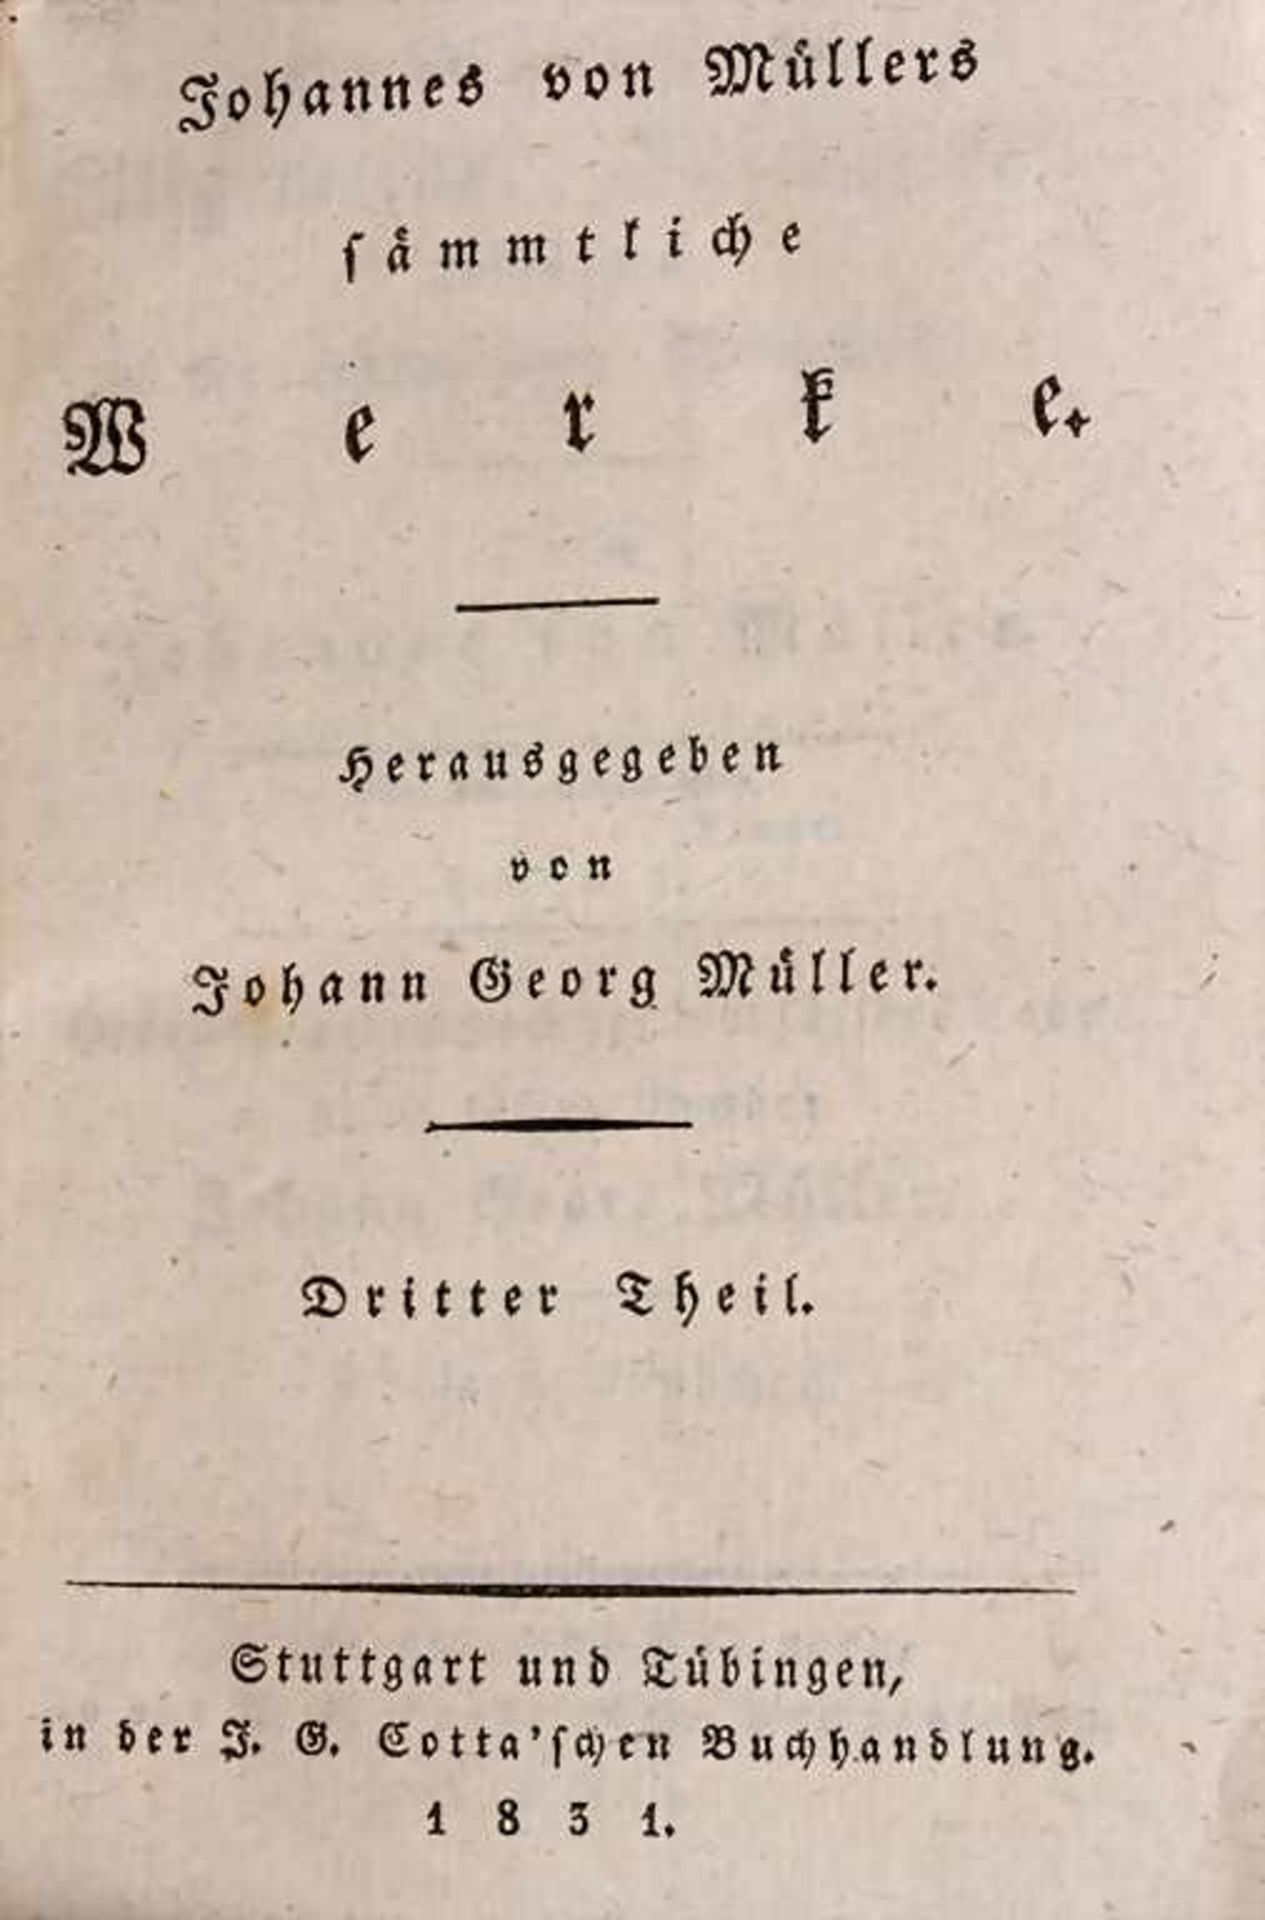 J. G. Müller (Hg), 10 Bände 'Johannes Müller', 1831/1832Untertitel: 'Sämmtliche Werke',Verlag. F.